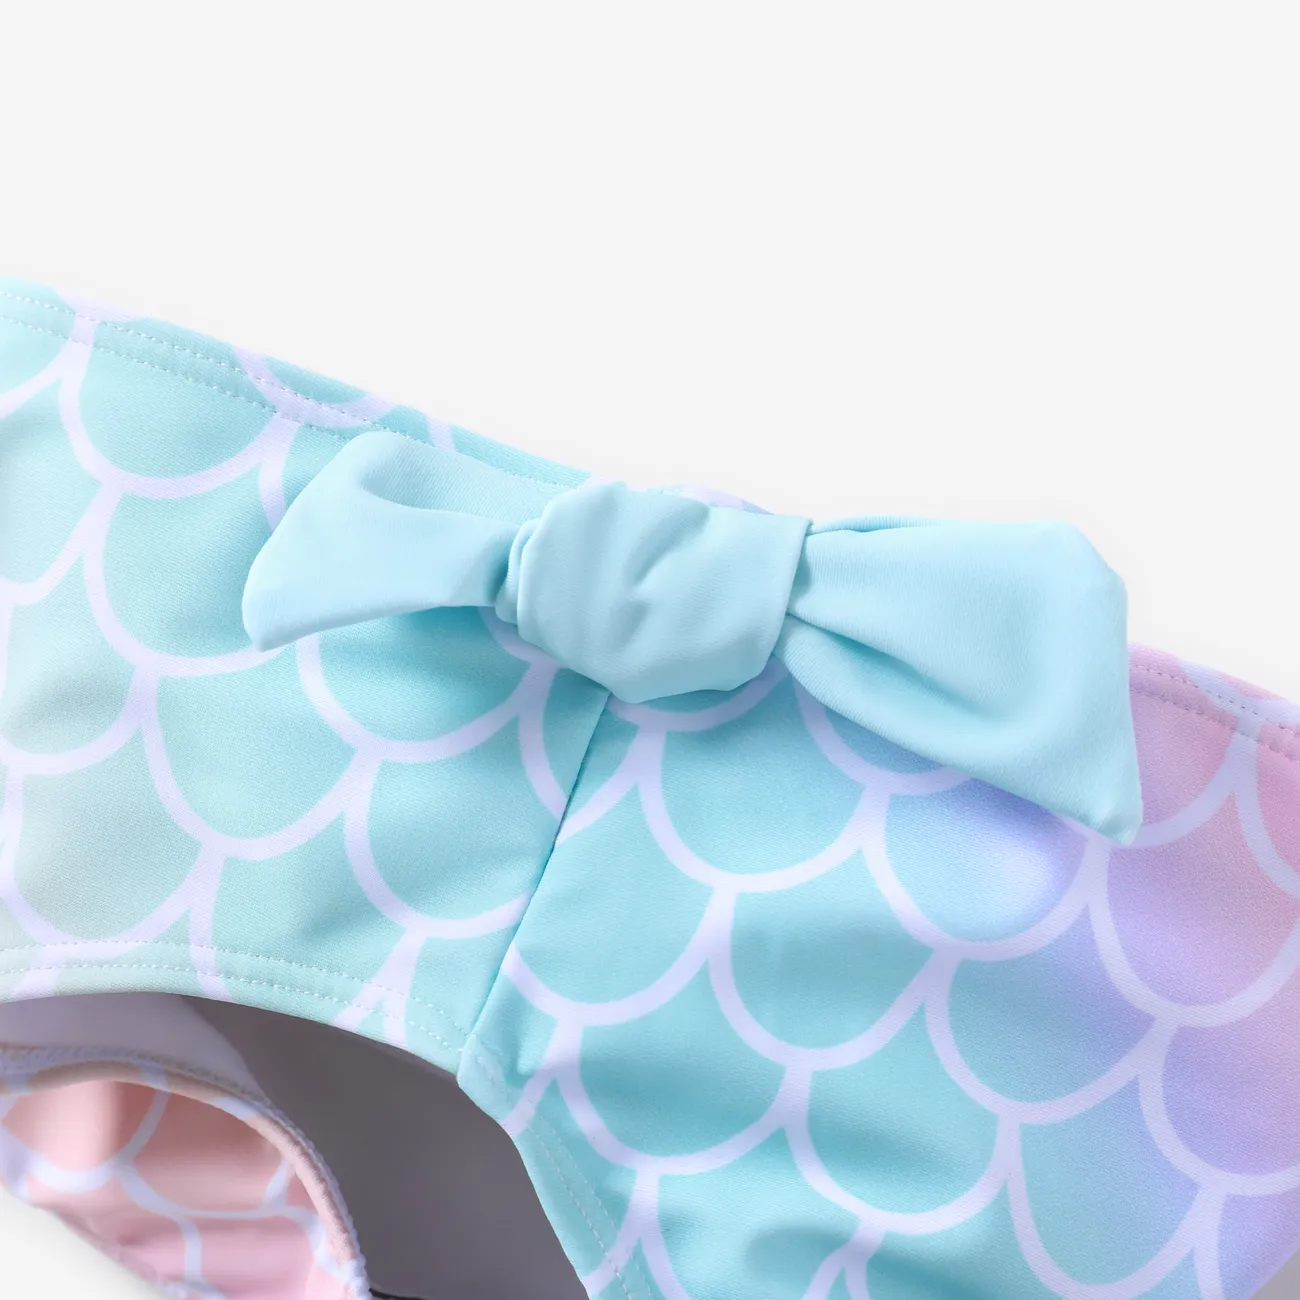 Disney Princess 2 unidades Chica Hombro caído Infantil Trajes de baño vistoso big image 1